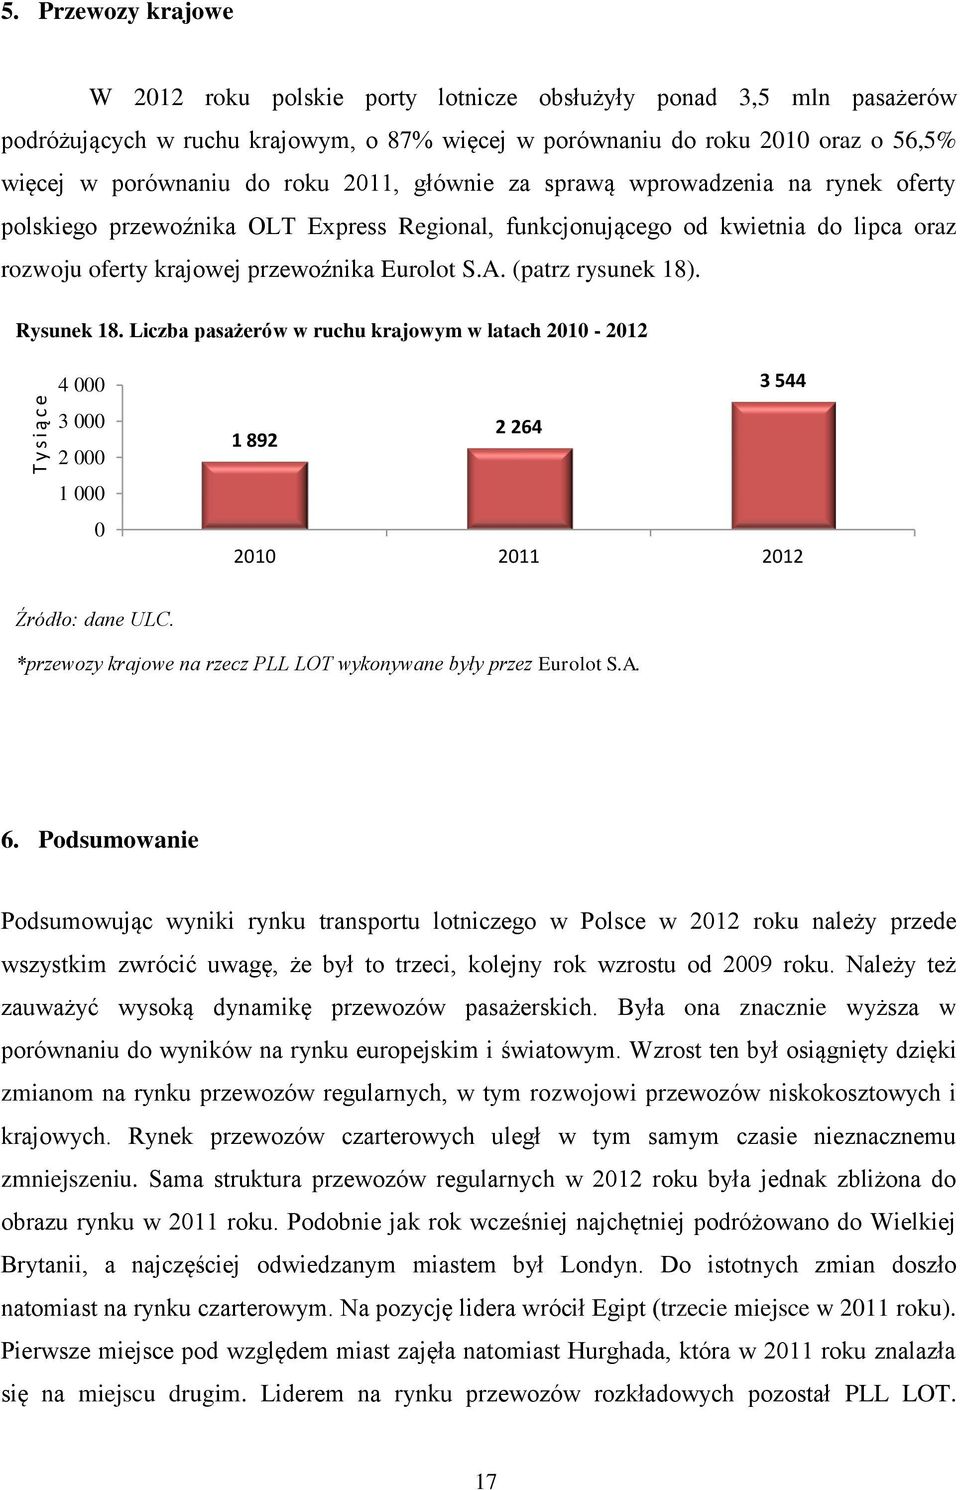 2011, głównie za sprawą wprowadzenia na rynek oferty polskiego przewoźnika OLT Express Regional, funkcjonującego od kwietnia do lipca oraz rozwoju oferty krajowej przewoźnika Eurolot S.A.